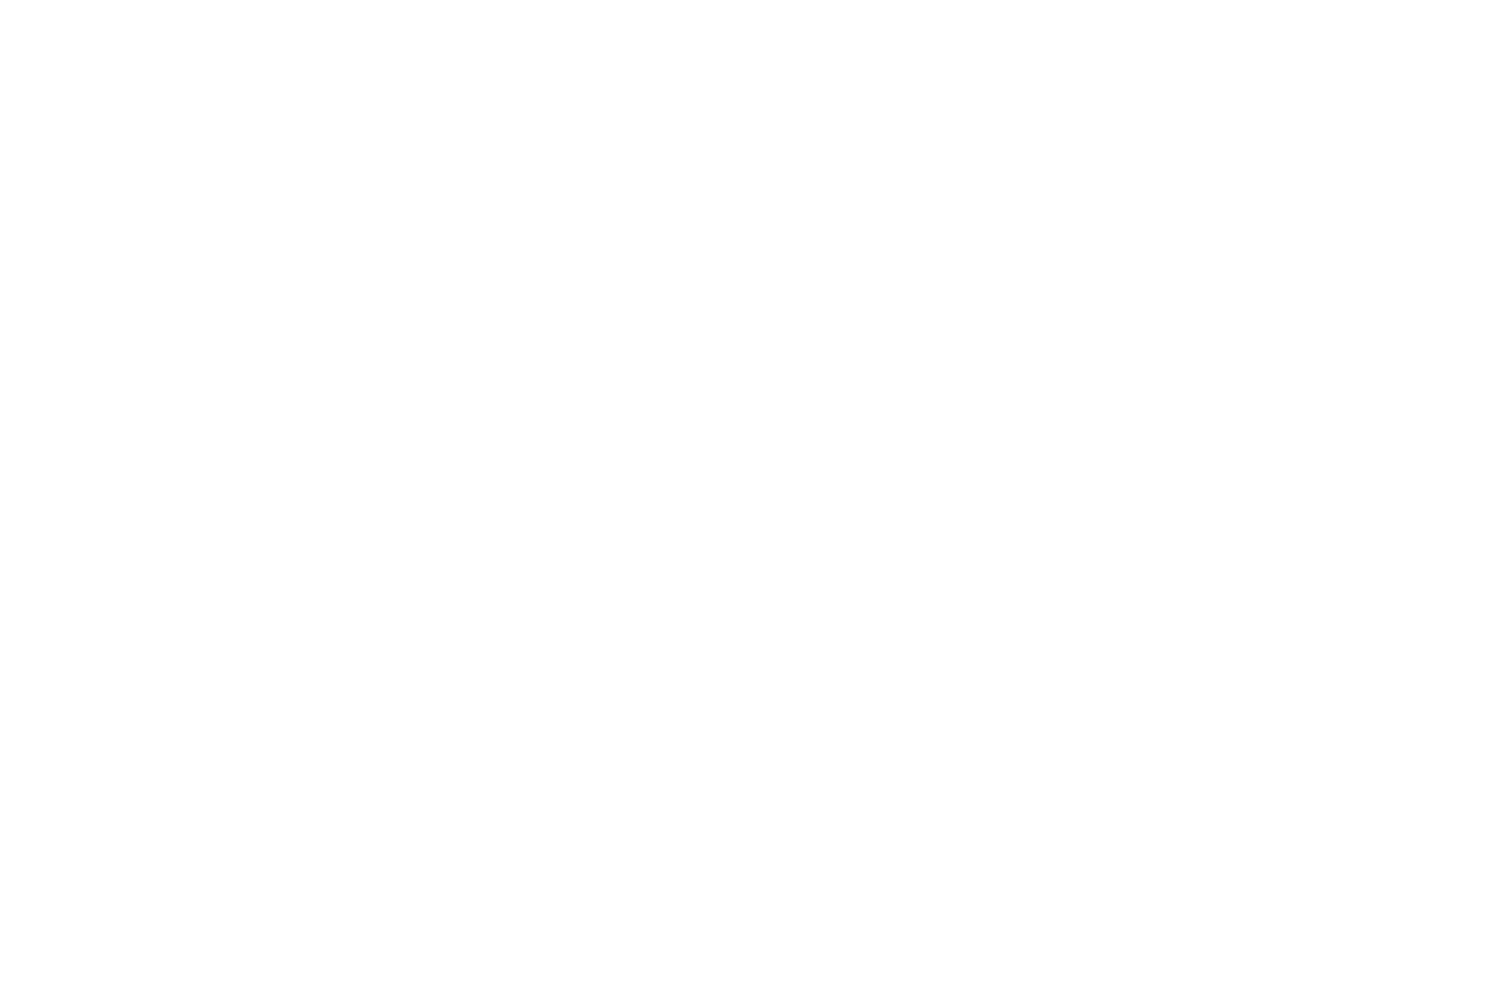 Weddings by Kelli